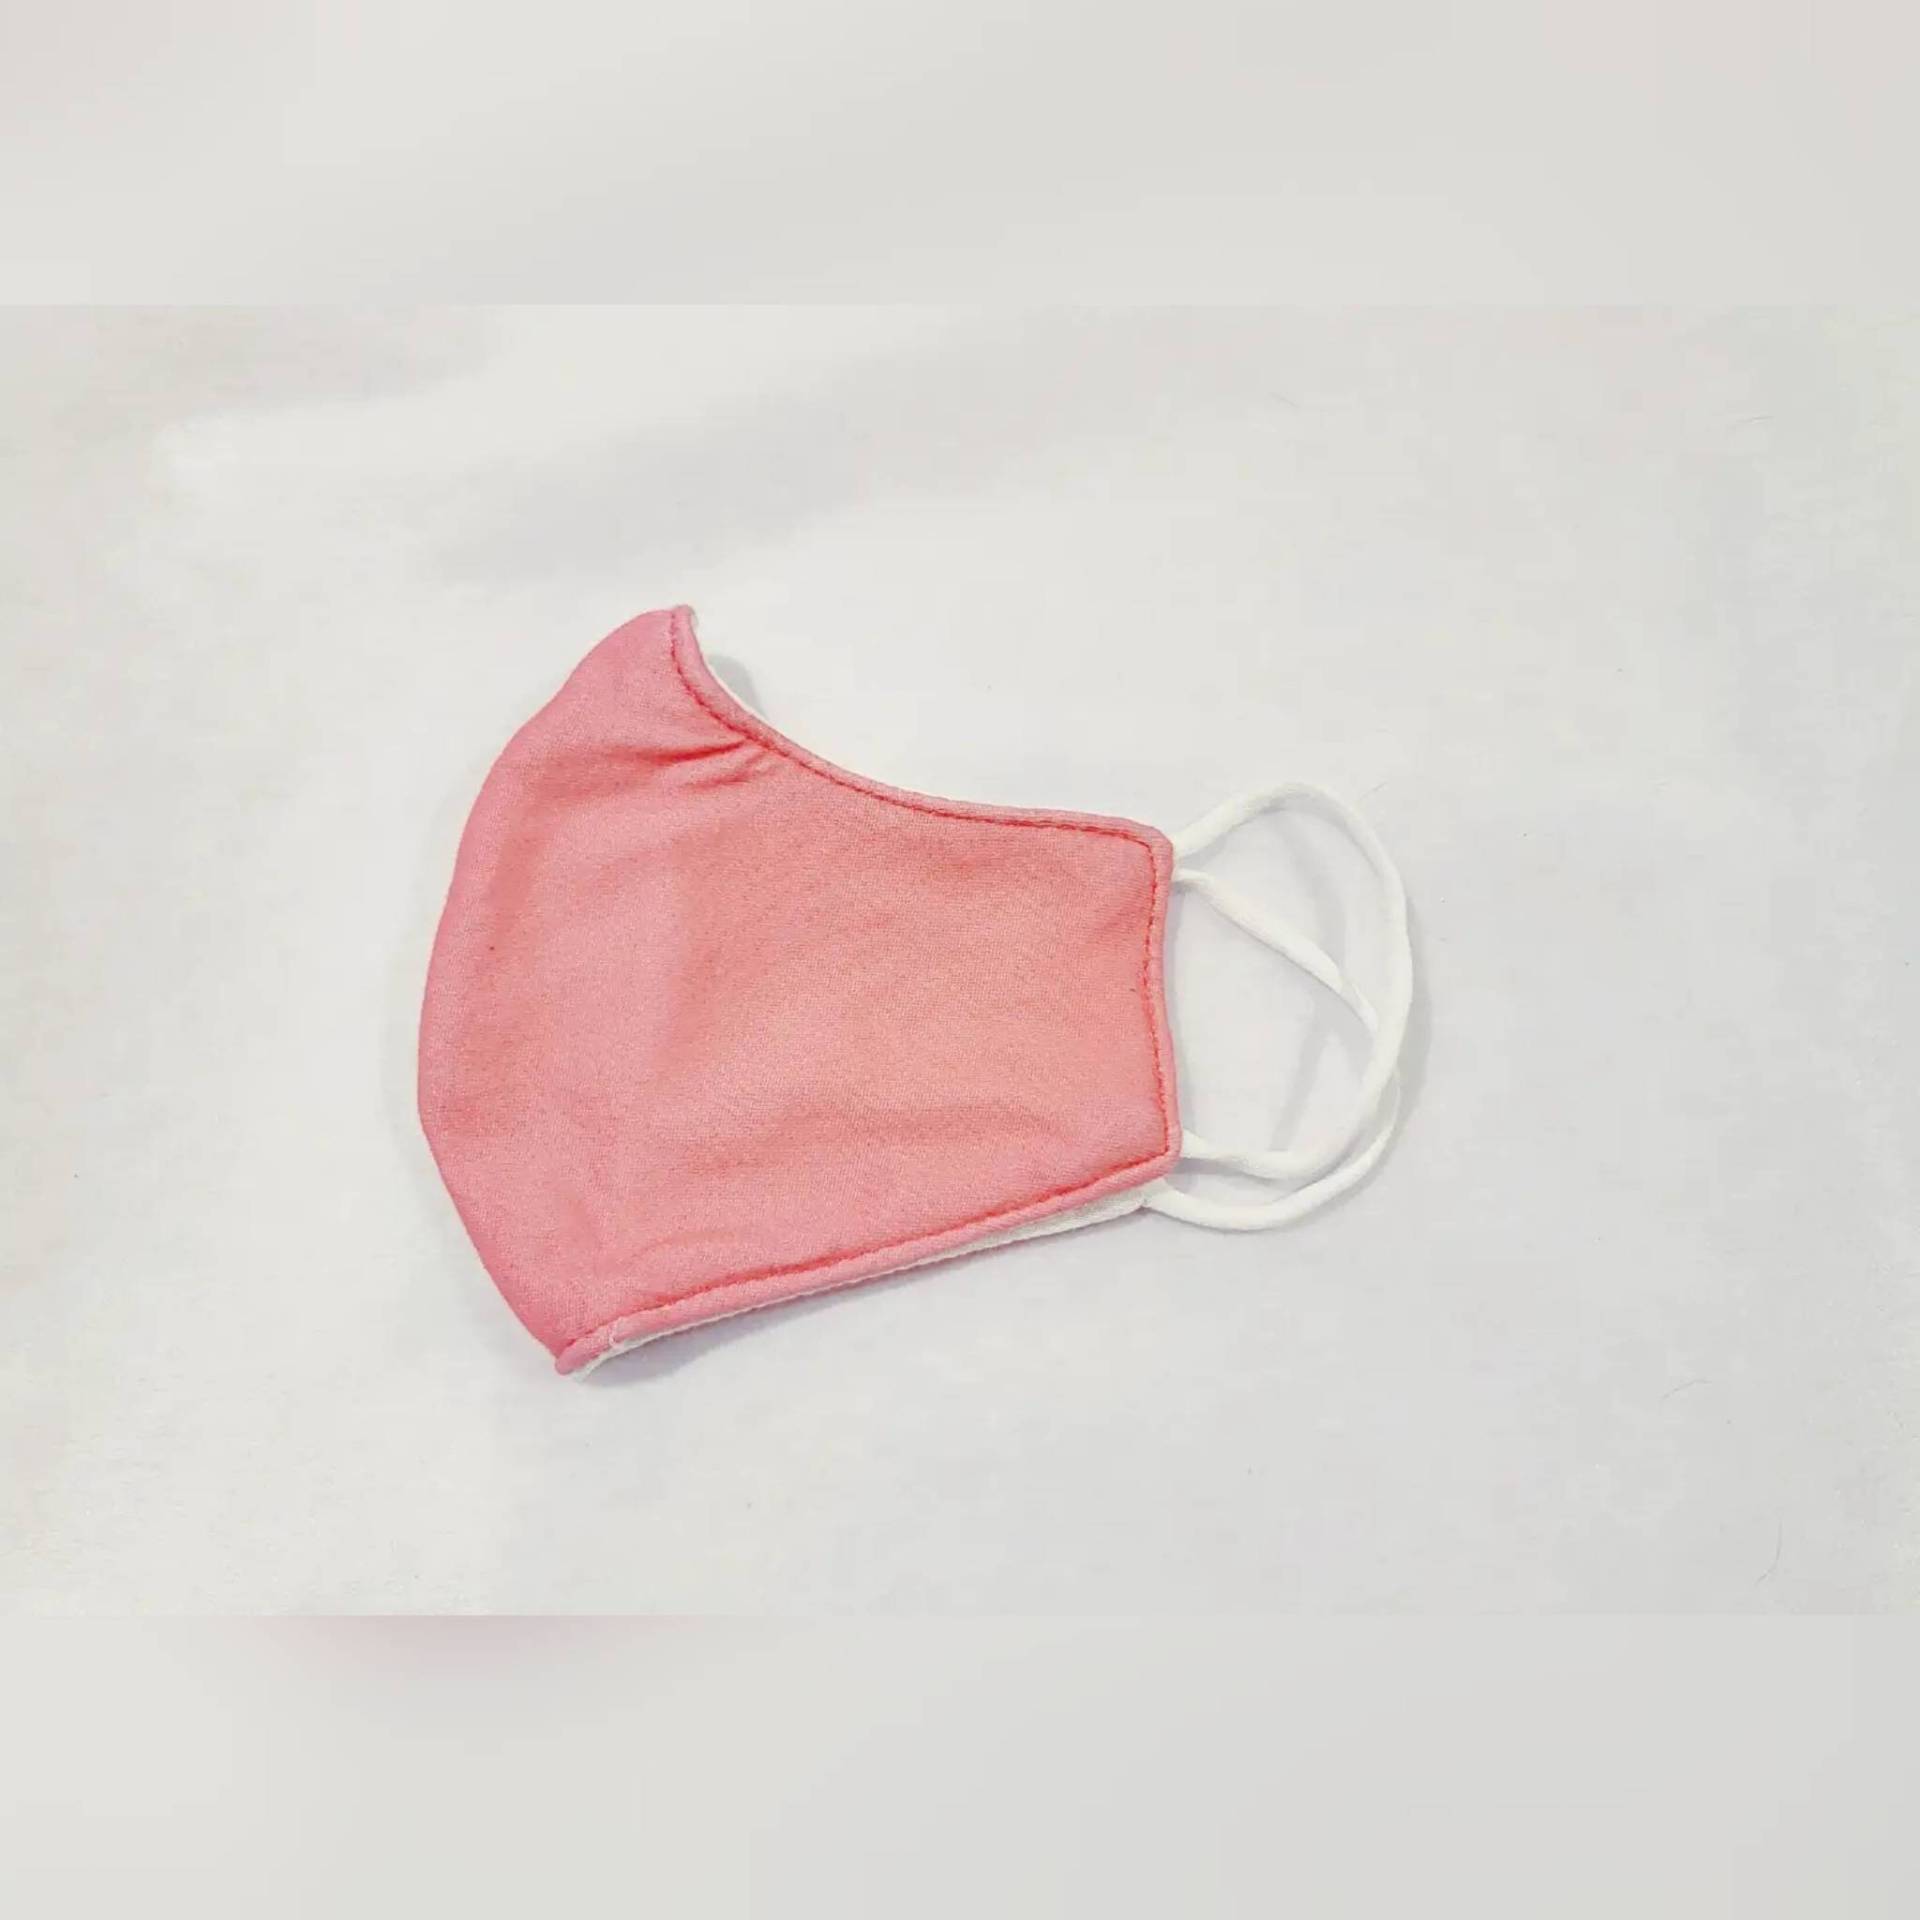 Kind Rosa Gesichtsmaske/Passend Für Kleinkinder Und Kinder 100% Baumwolle Wiederverwendbar, Waschbar Doppellagig Atmungsaktiv Komfortabel von FunAndUniqueMasks